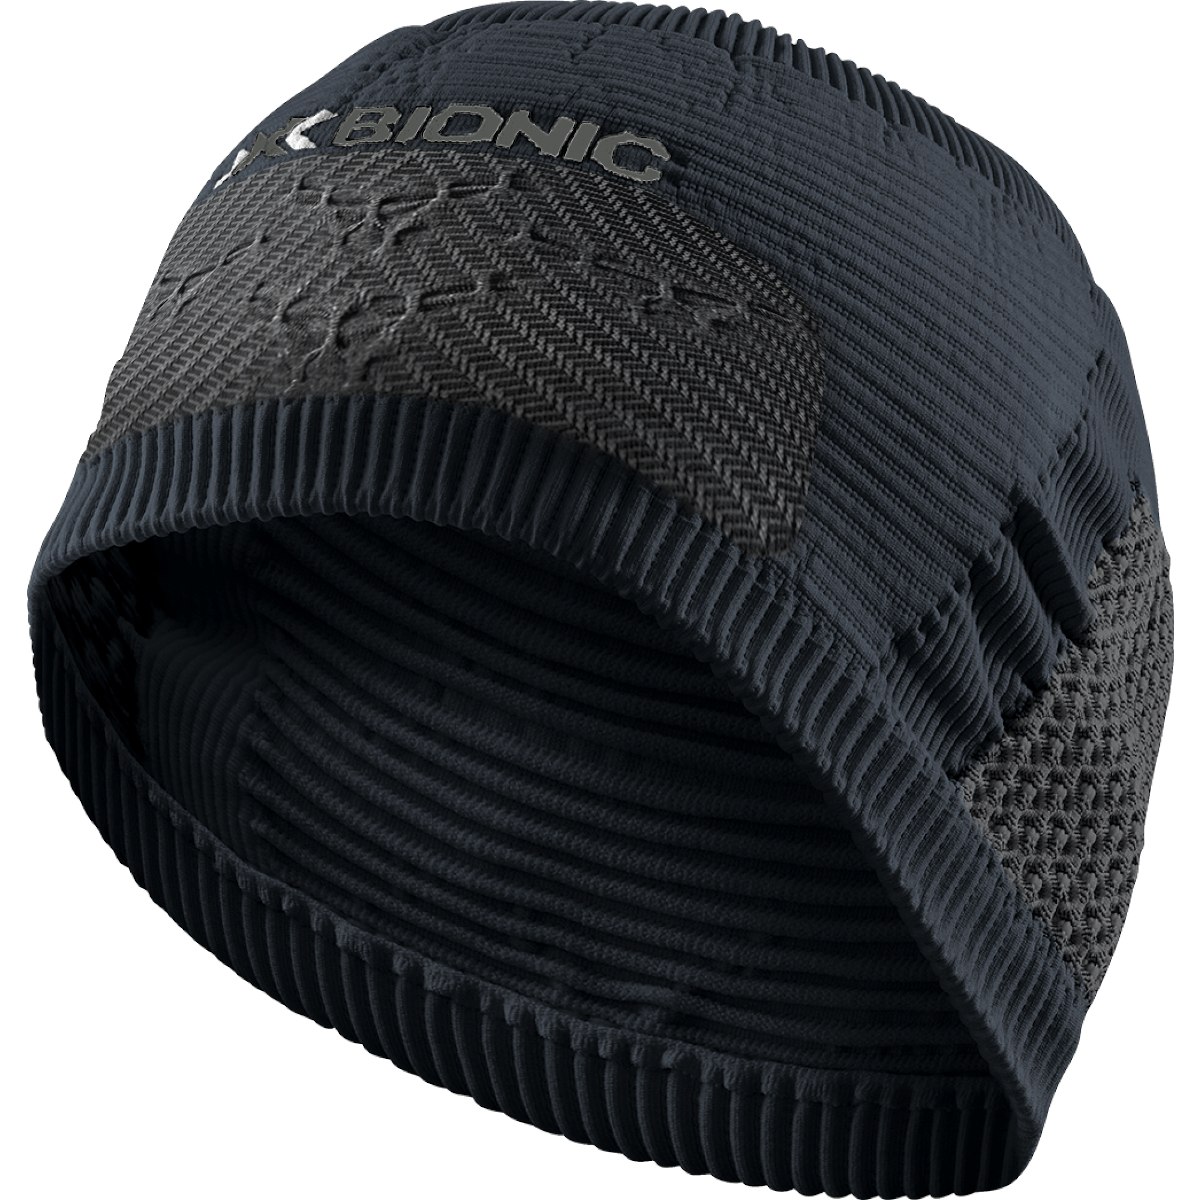 Immagine prodotto da X-Bionic High Headband 4.0 - black/charcoal